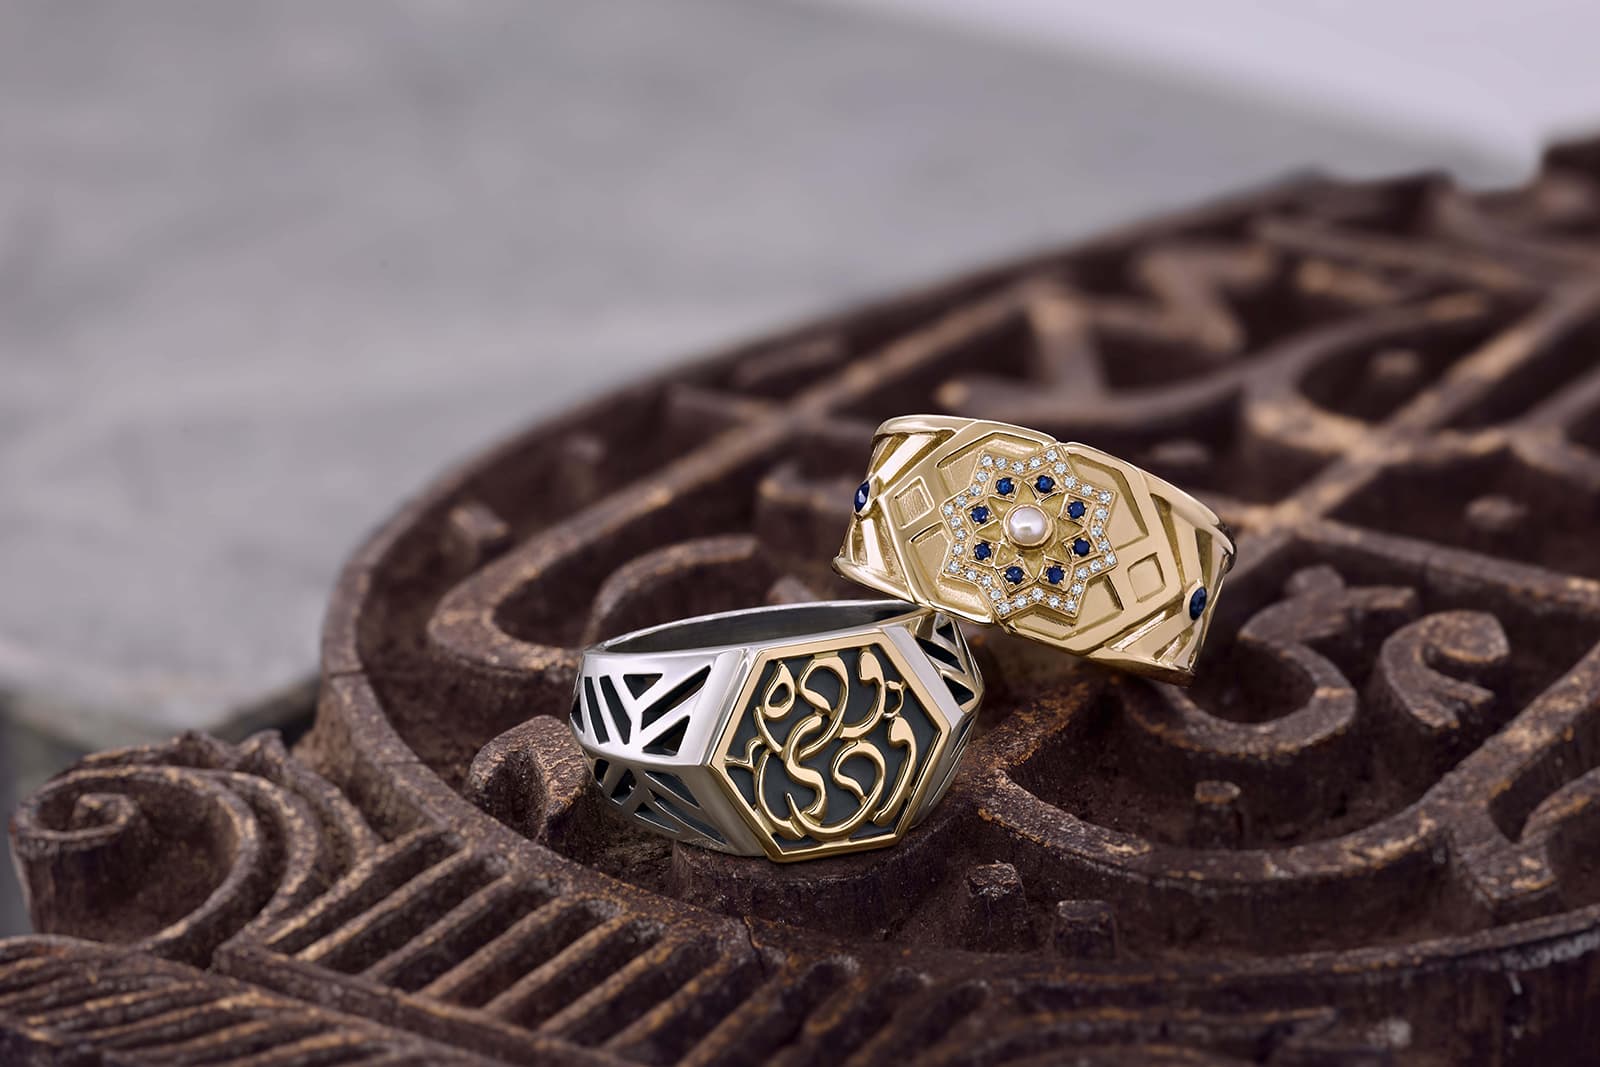 Украшения Azza Fahmy из коллекции 'Mamluk': кольцо ‘Qalawun’ с бриллиантами, сапфирами и жемчугом; кольцо ‘Minaret’